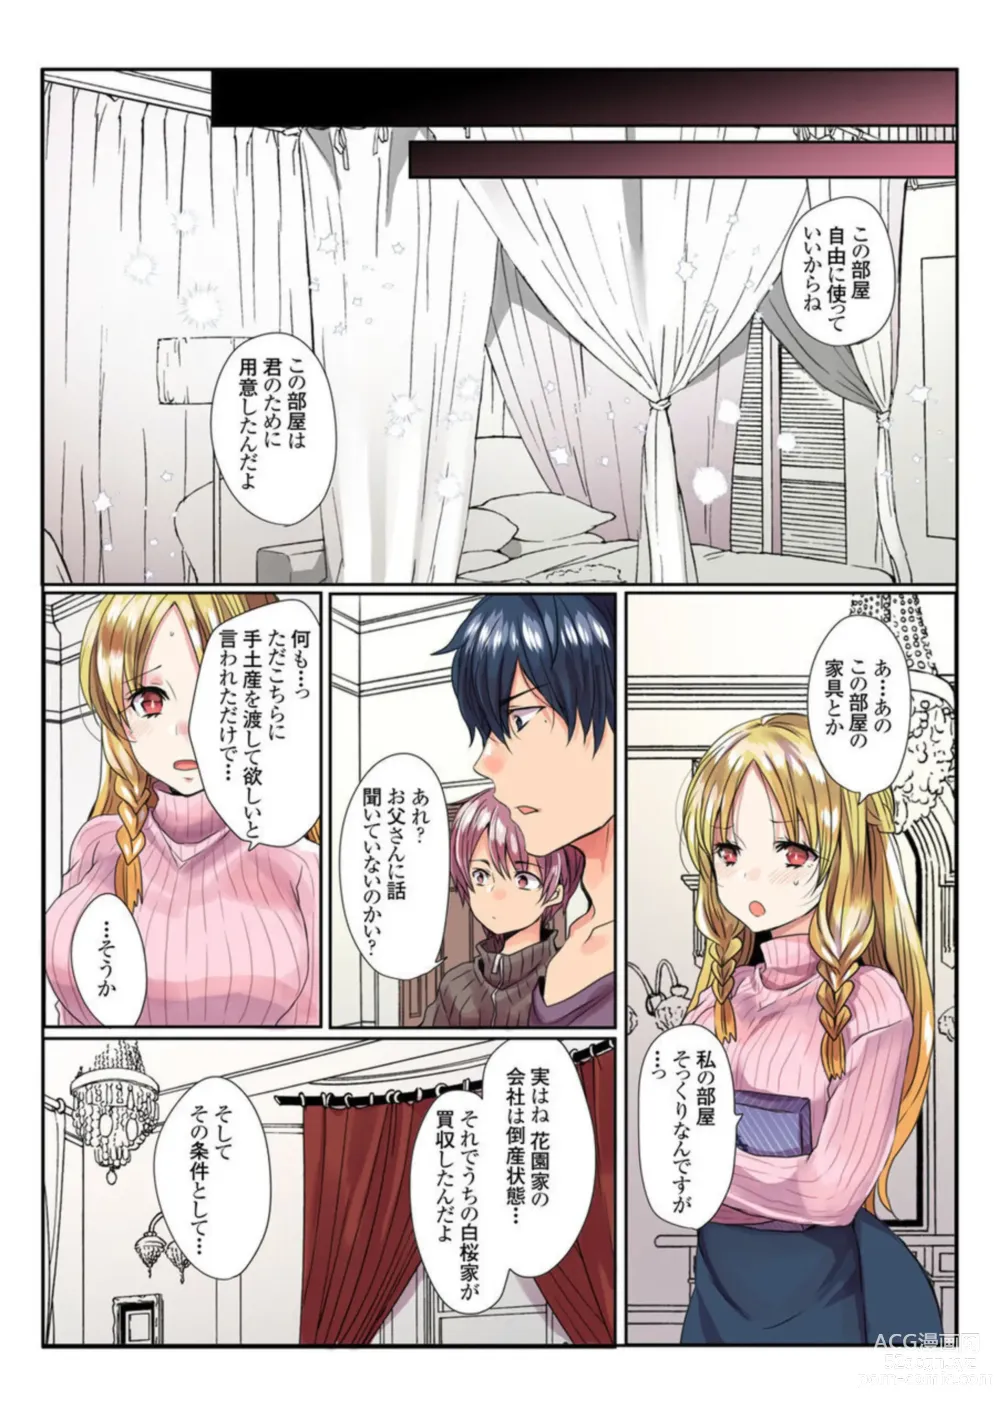 Page 8 of manga Ike nai Muko Erabi no ura Jijō 1